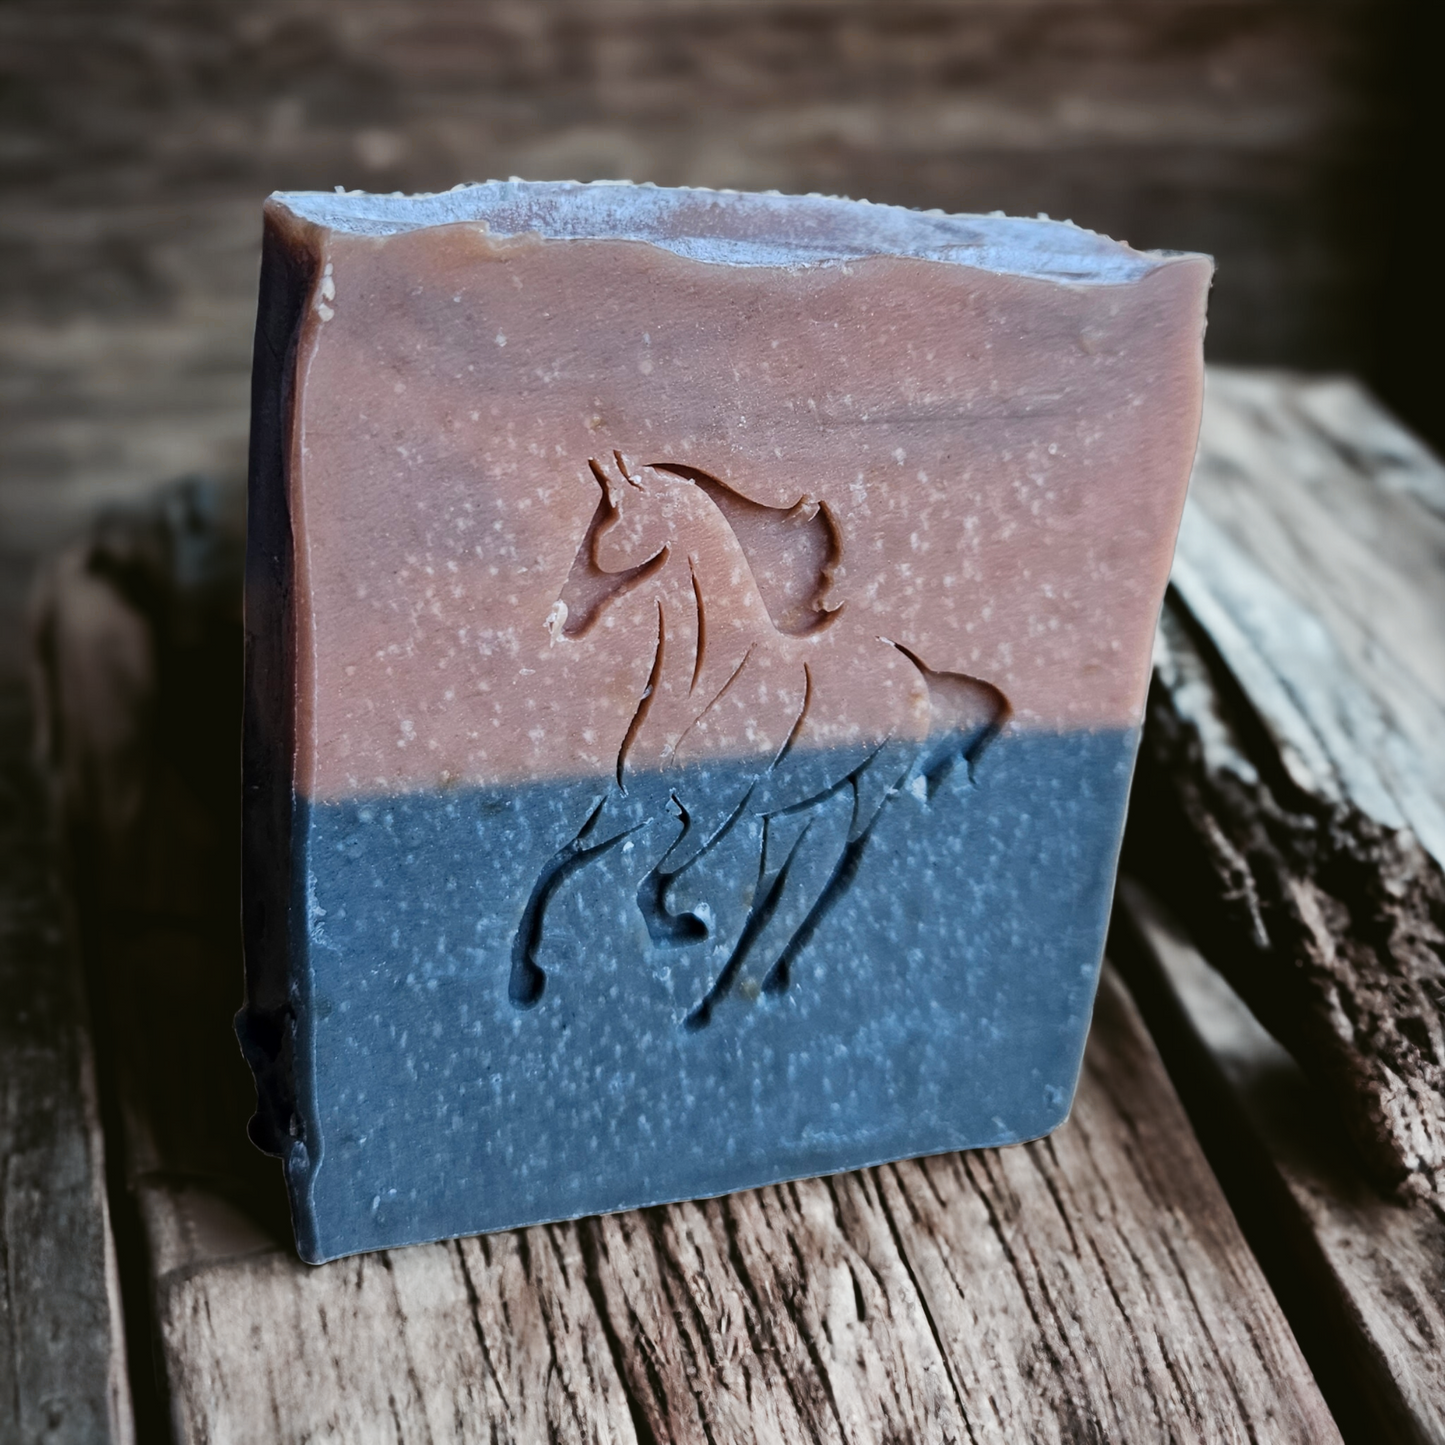 Wrangler (Mahogany and Red Cedar) - Goat Milk Soap